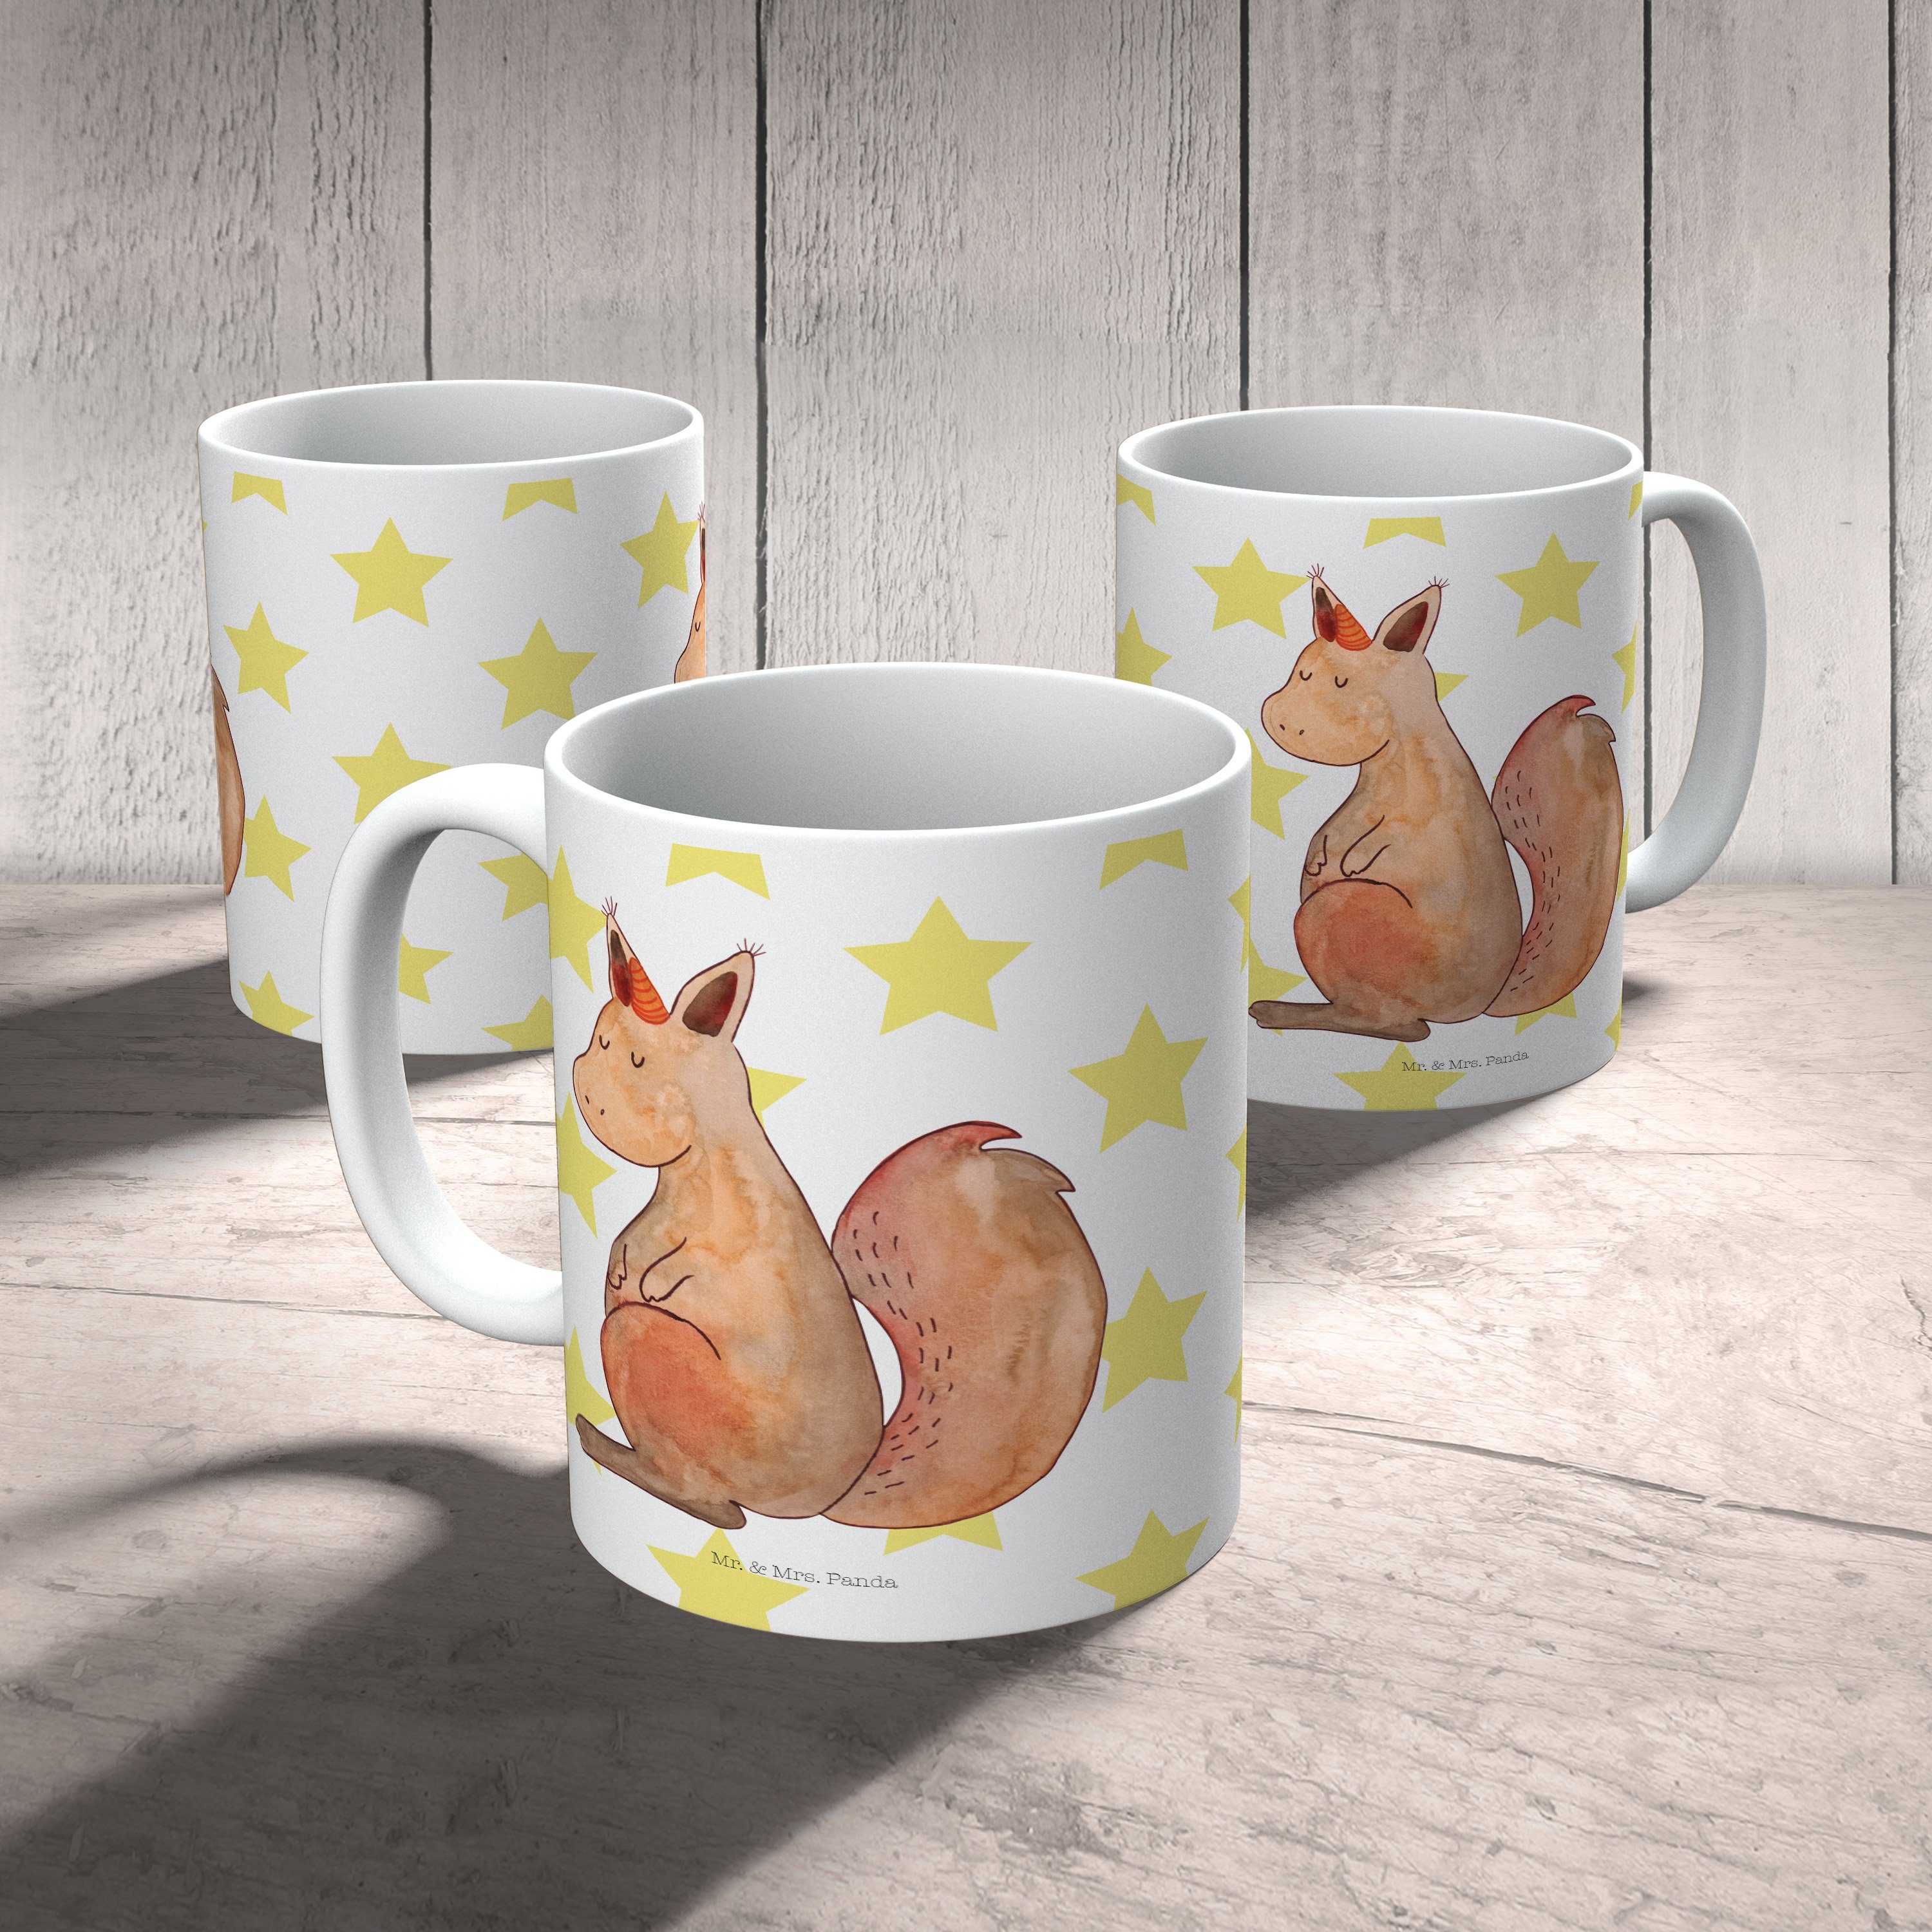 Pegasus, & Mrs. - Tasse - Einhörnchen Glaube Weiß Keramik Geschenk, Panda E, Tasse, Mr. Kaffeebecher,